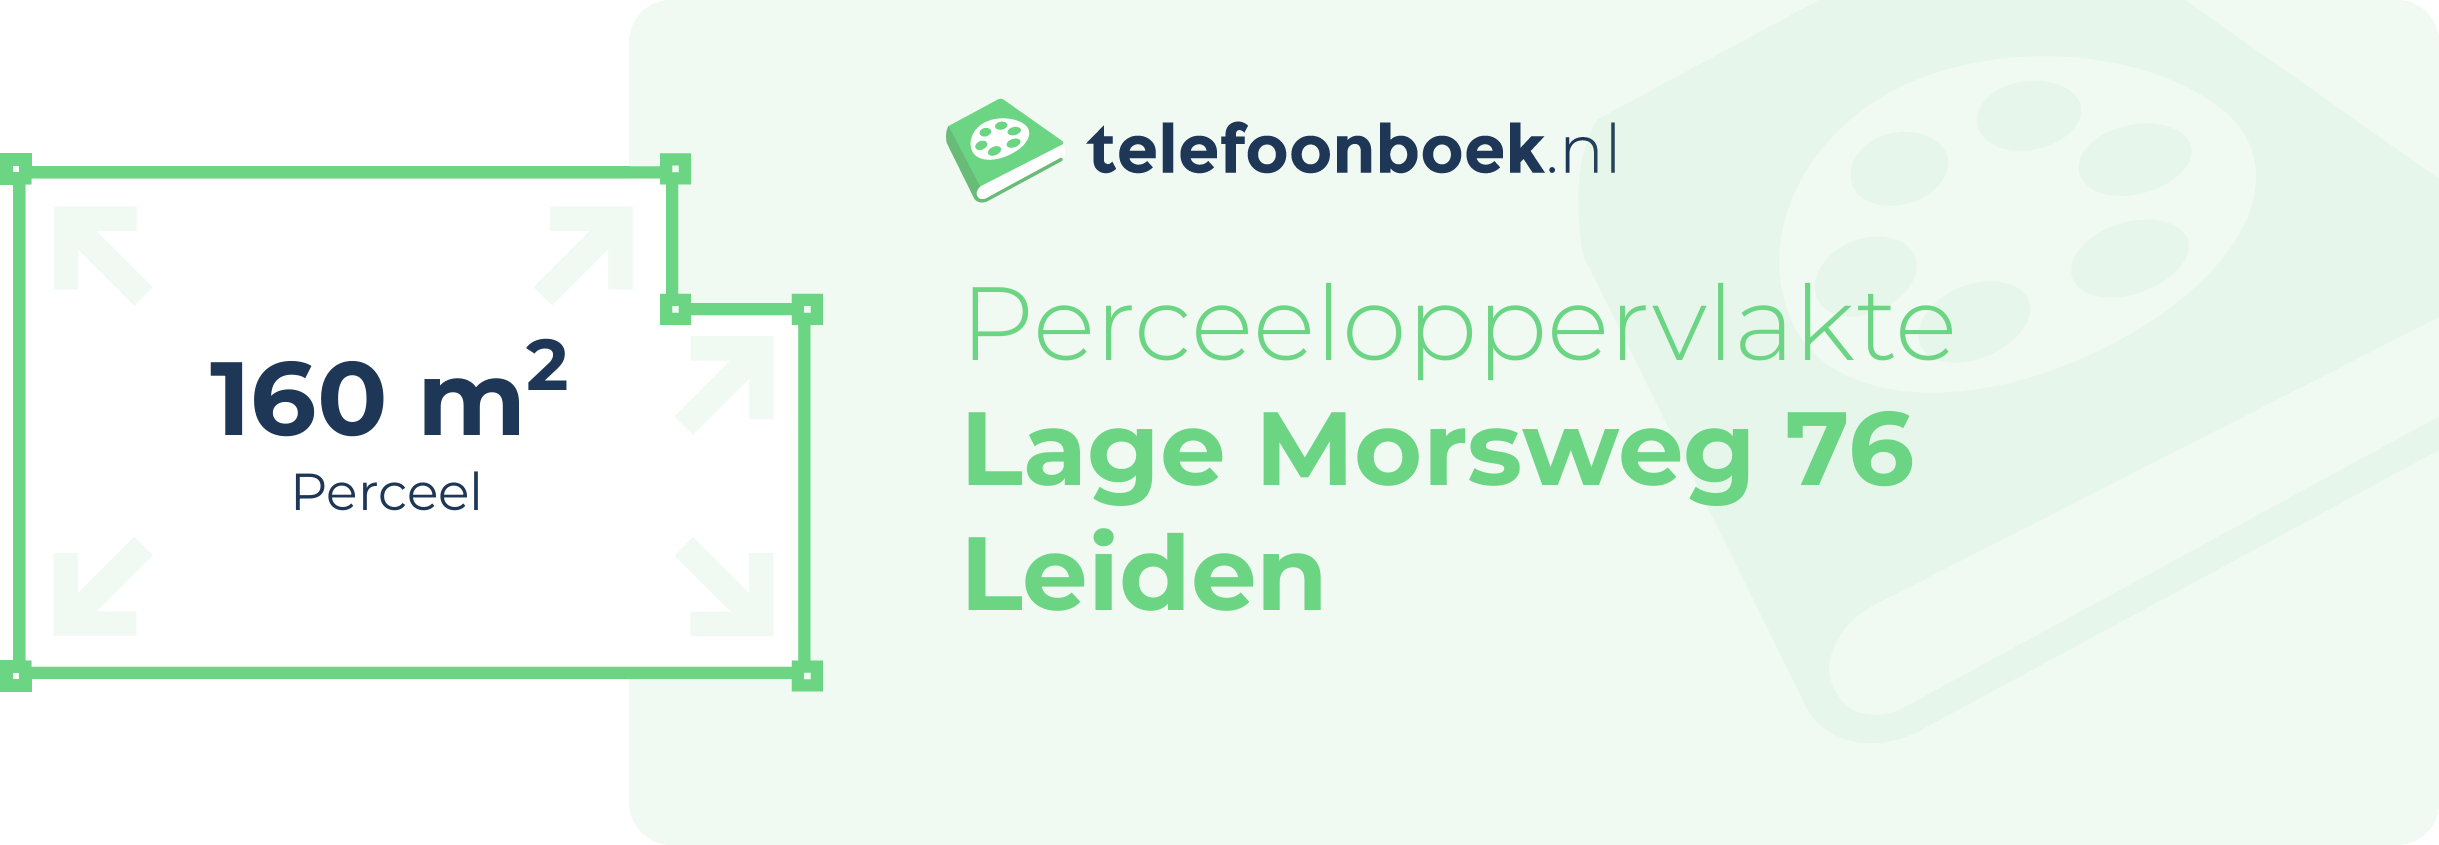 Perceeloppervlakte Lage Morsweg 76 Leiden